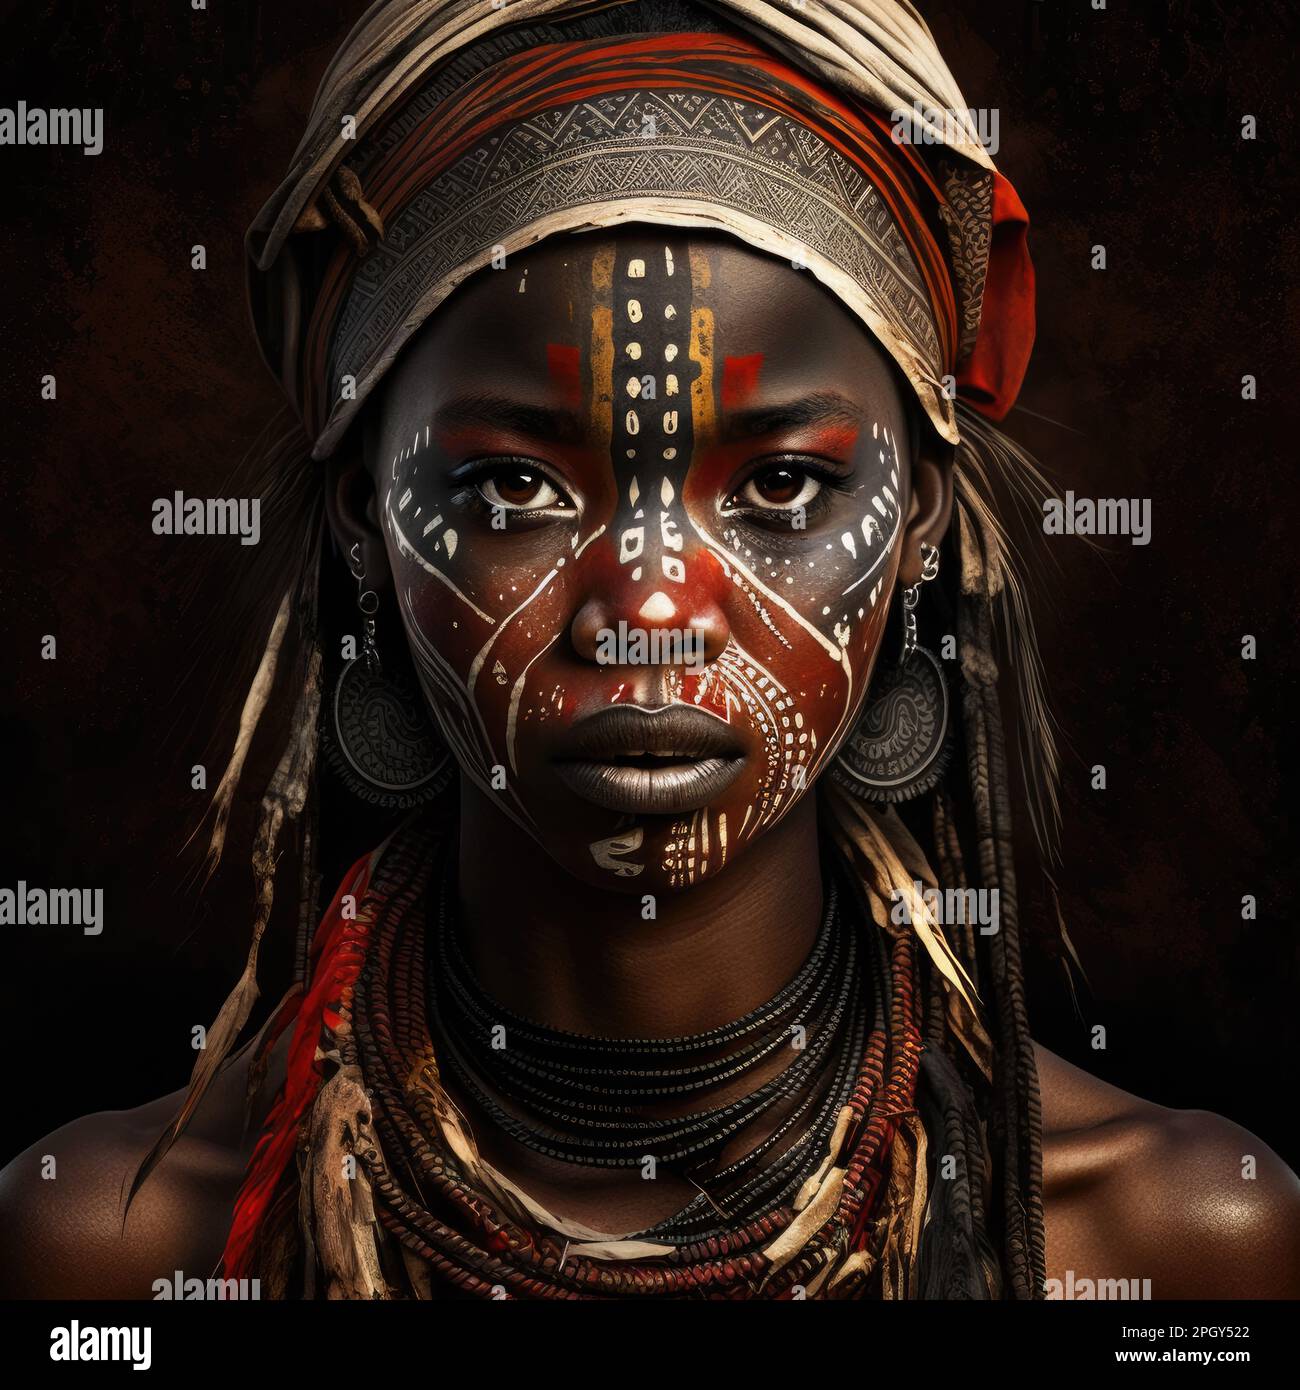 il volto di una donna affricana con caratteristiche esasive durante una cerimonia tribale Foto Stock